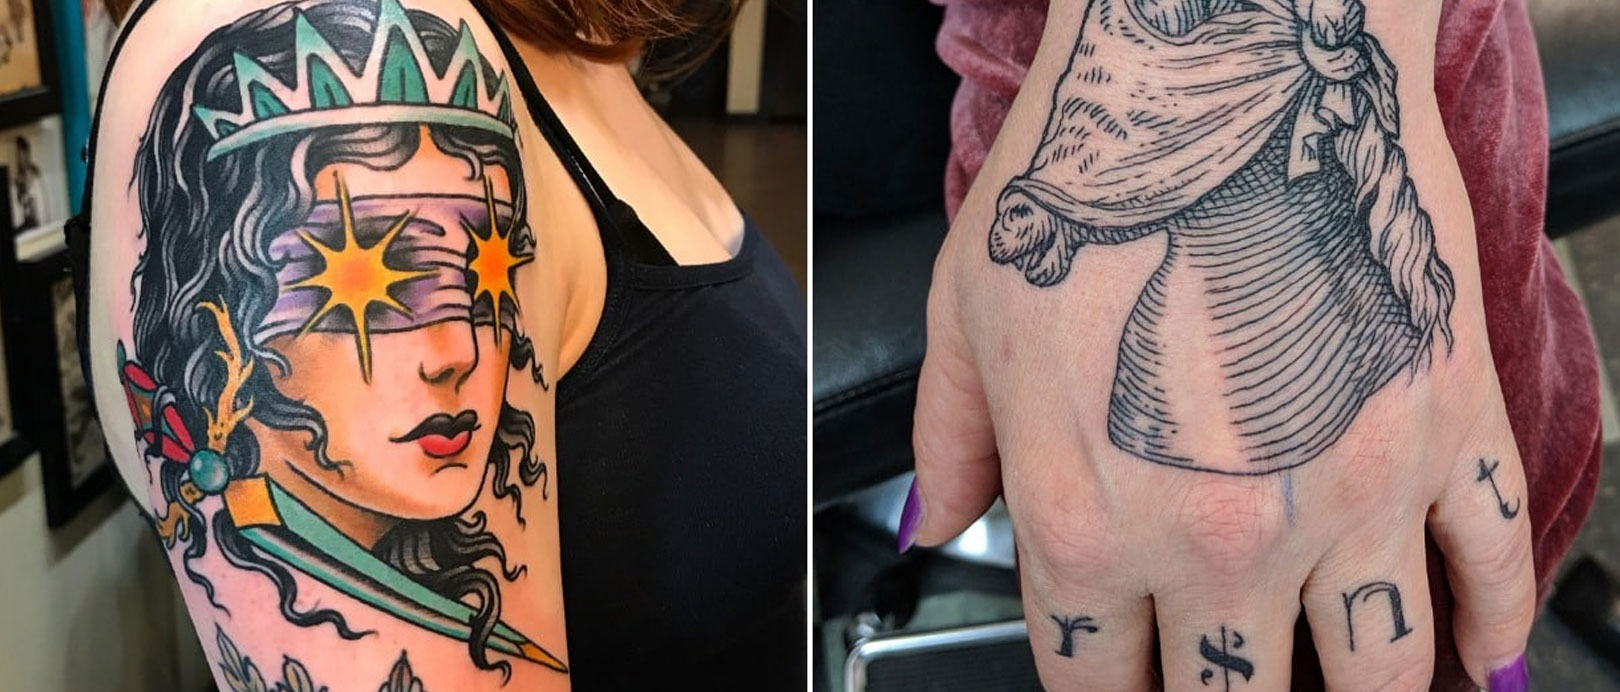 10 best tattoo artists in america